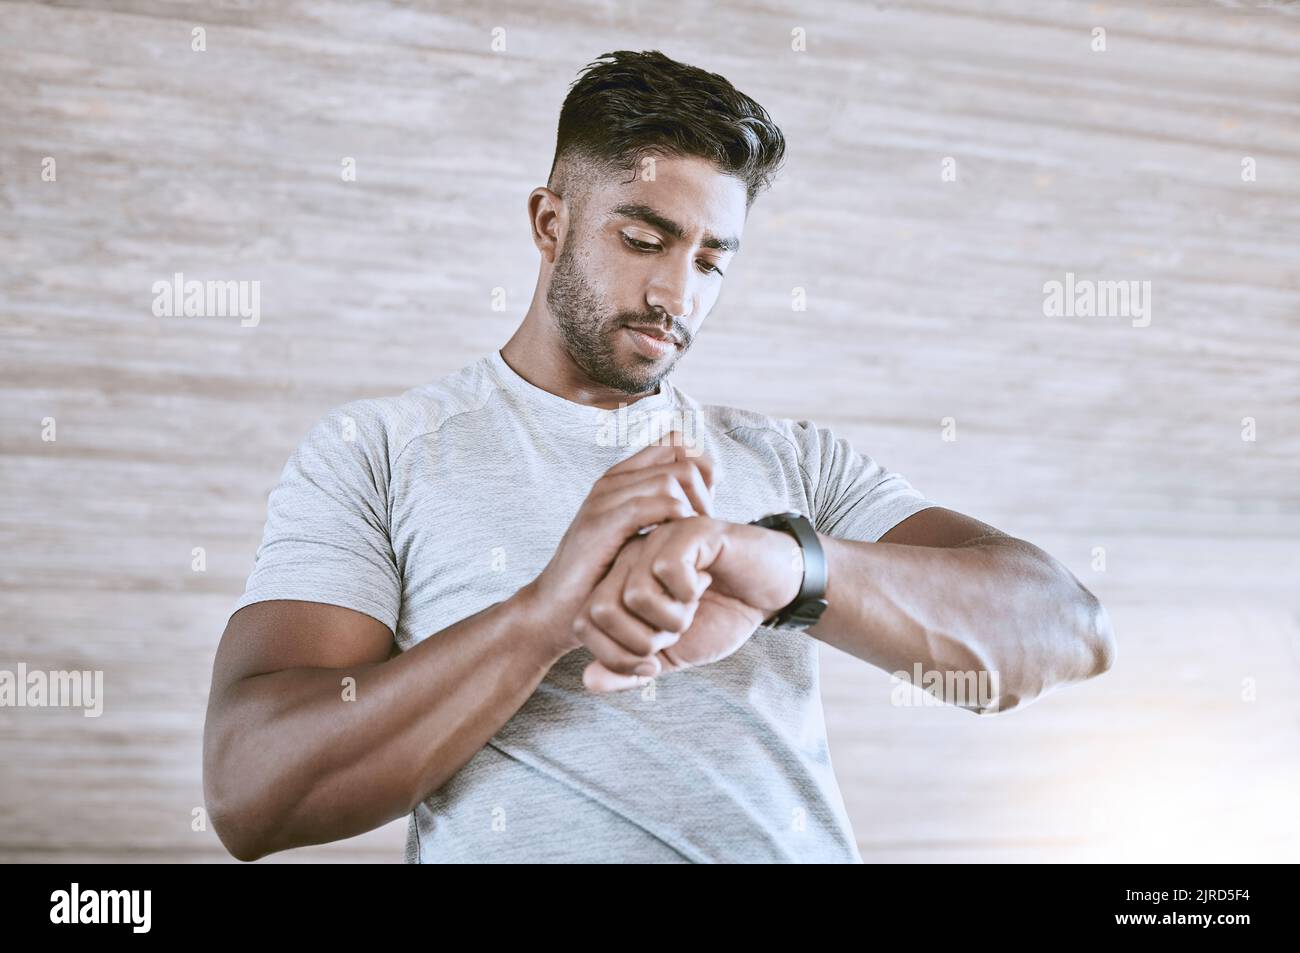 Mann mit digitaler Smartwatch für die Verfolgung von Gesundheit, Fitness und Leistungsfortschritt nach dem Training oder Training. Starker und gesunder junger Mann oder Athlet Stockfoto